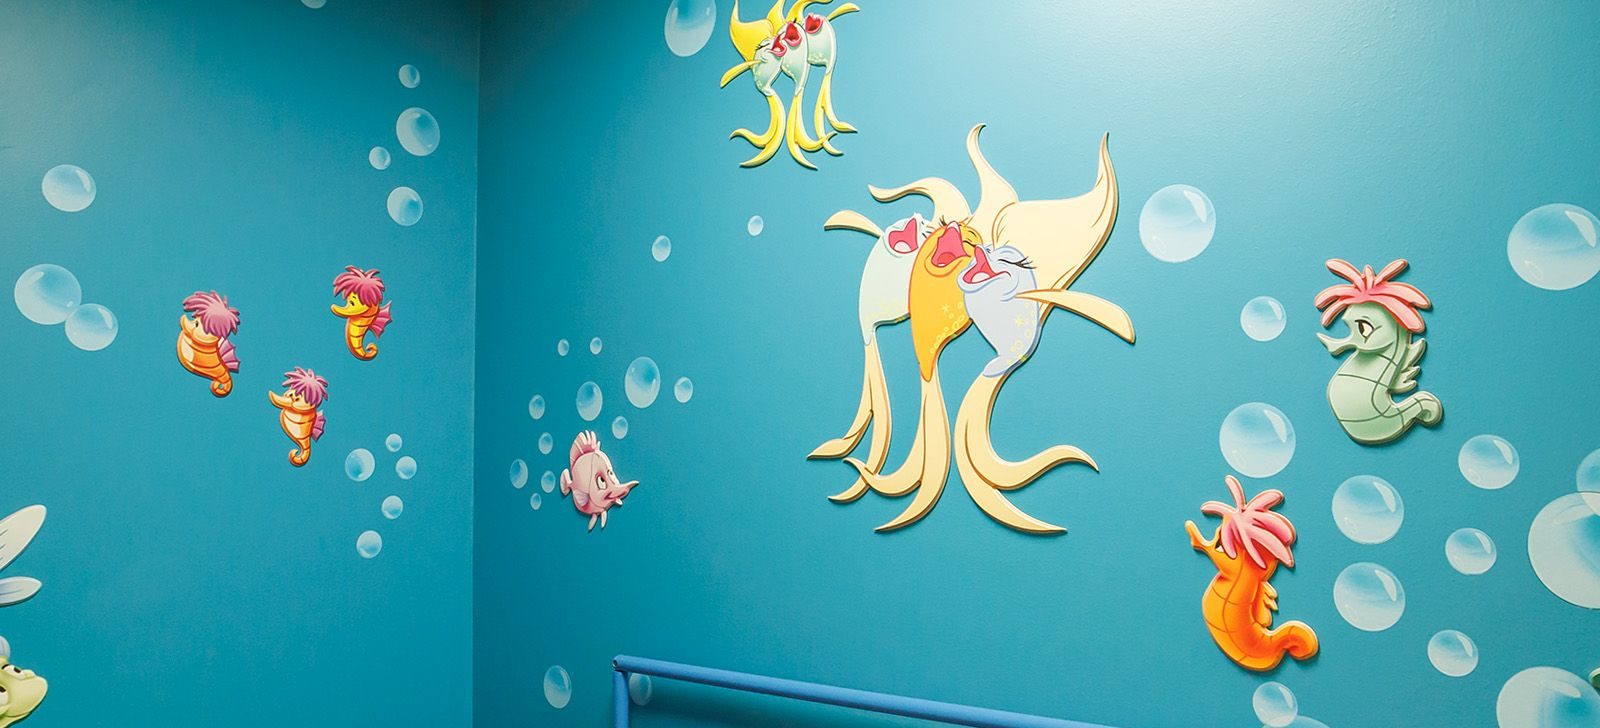 В «Морозовке» на стенах изображены разноцветные рыбы, морские коньки и многое другое, например, аппарат МРТ выполнен в виде батискафа. Фото: сайт мэра Москвы